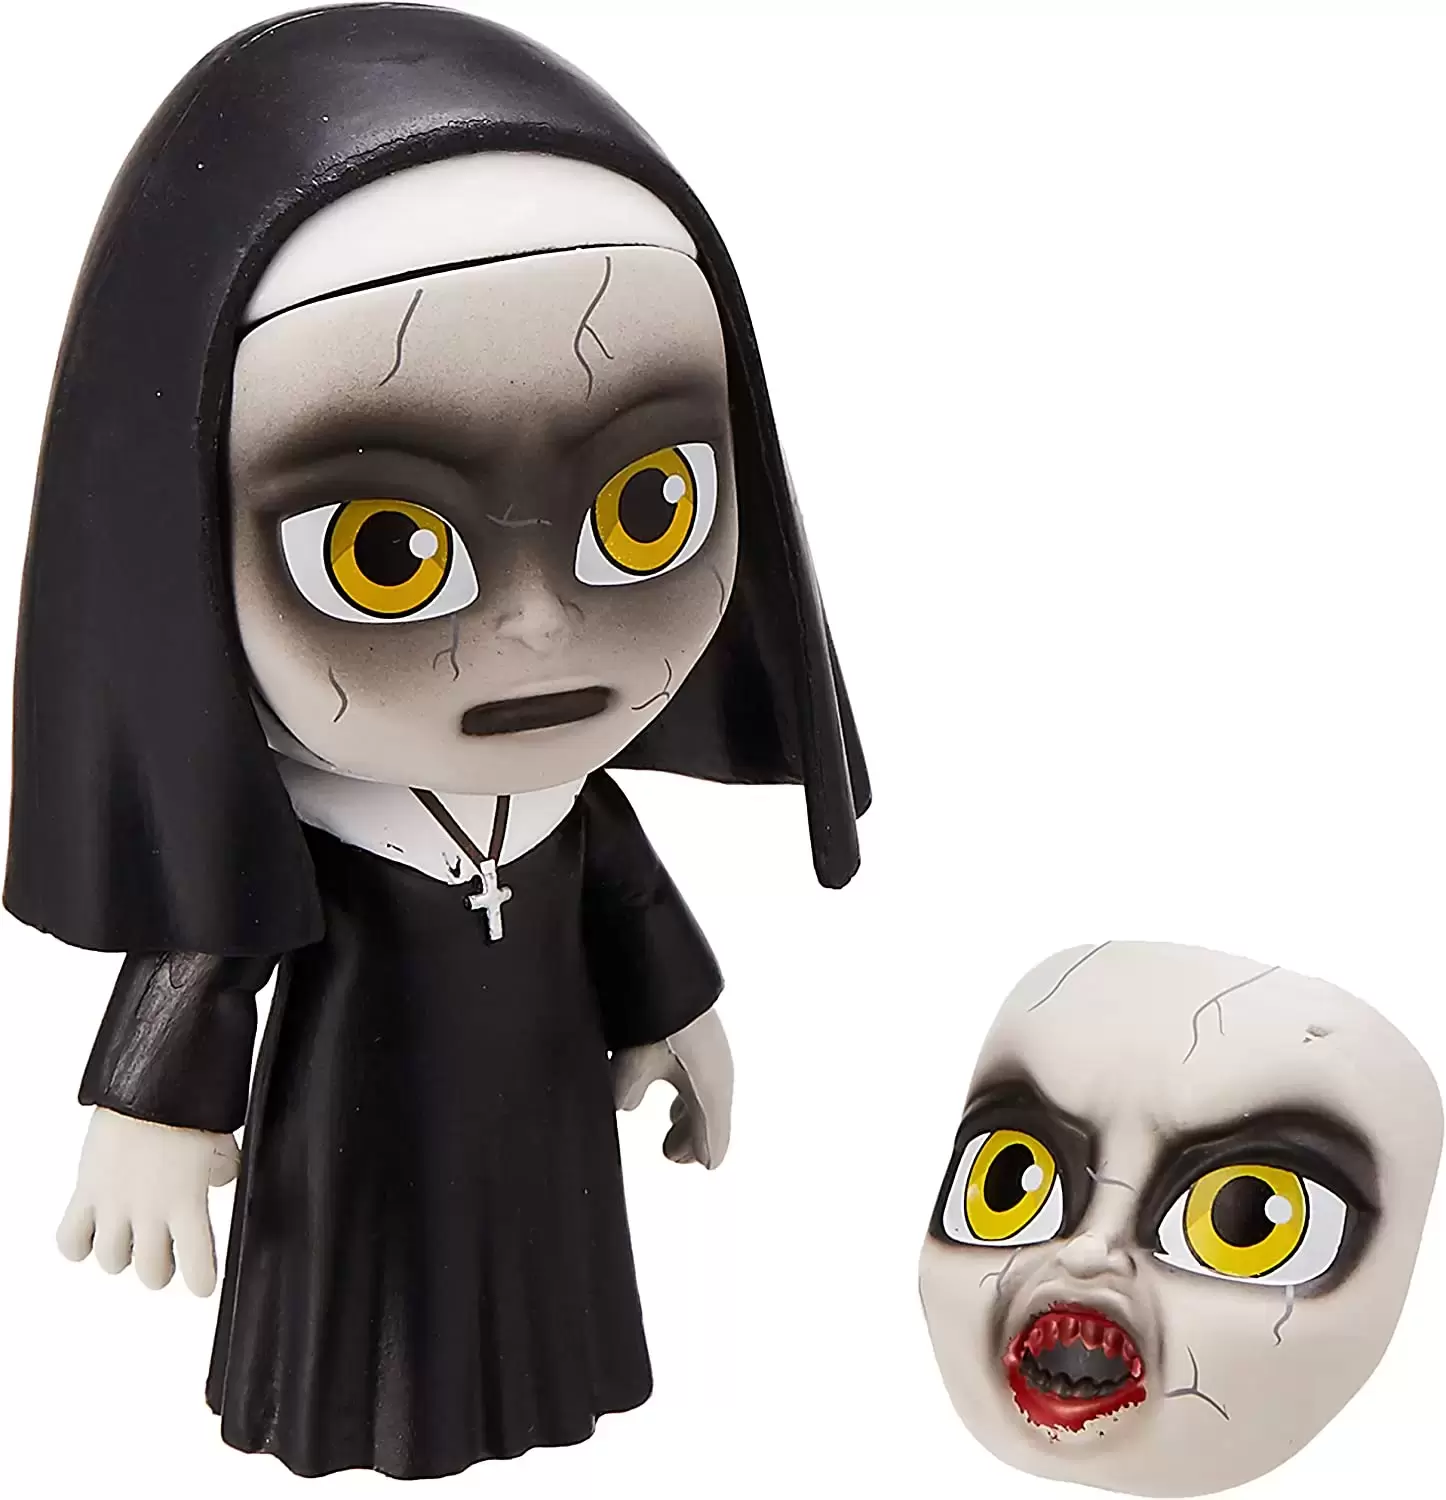 Horror - The Nun - The Nun